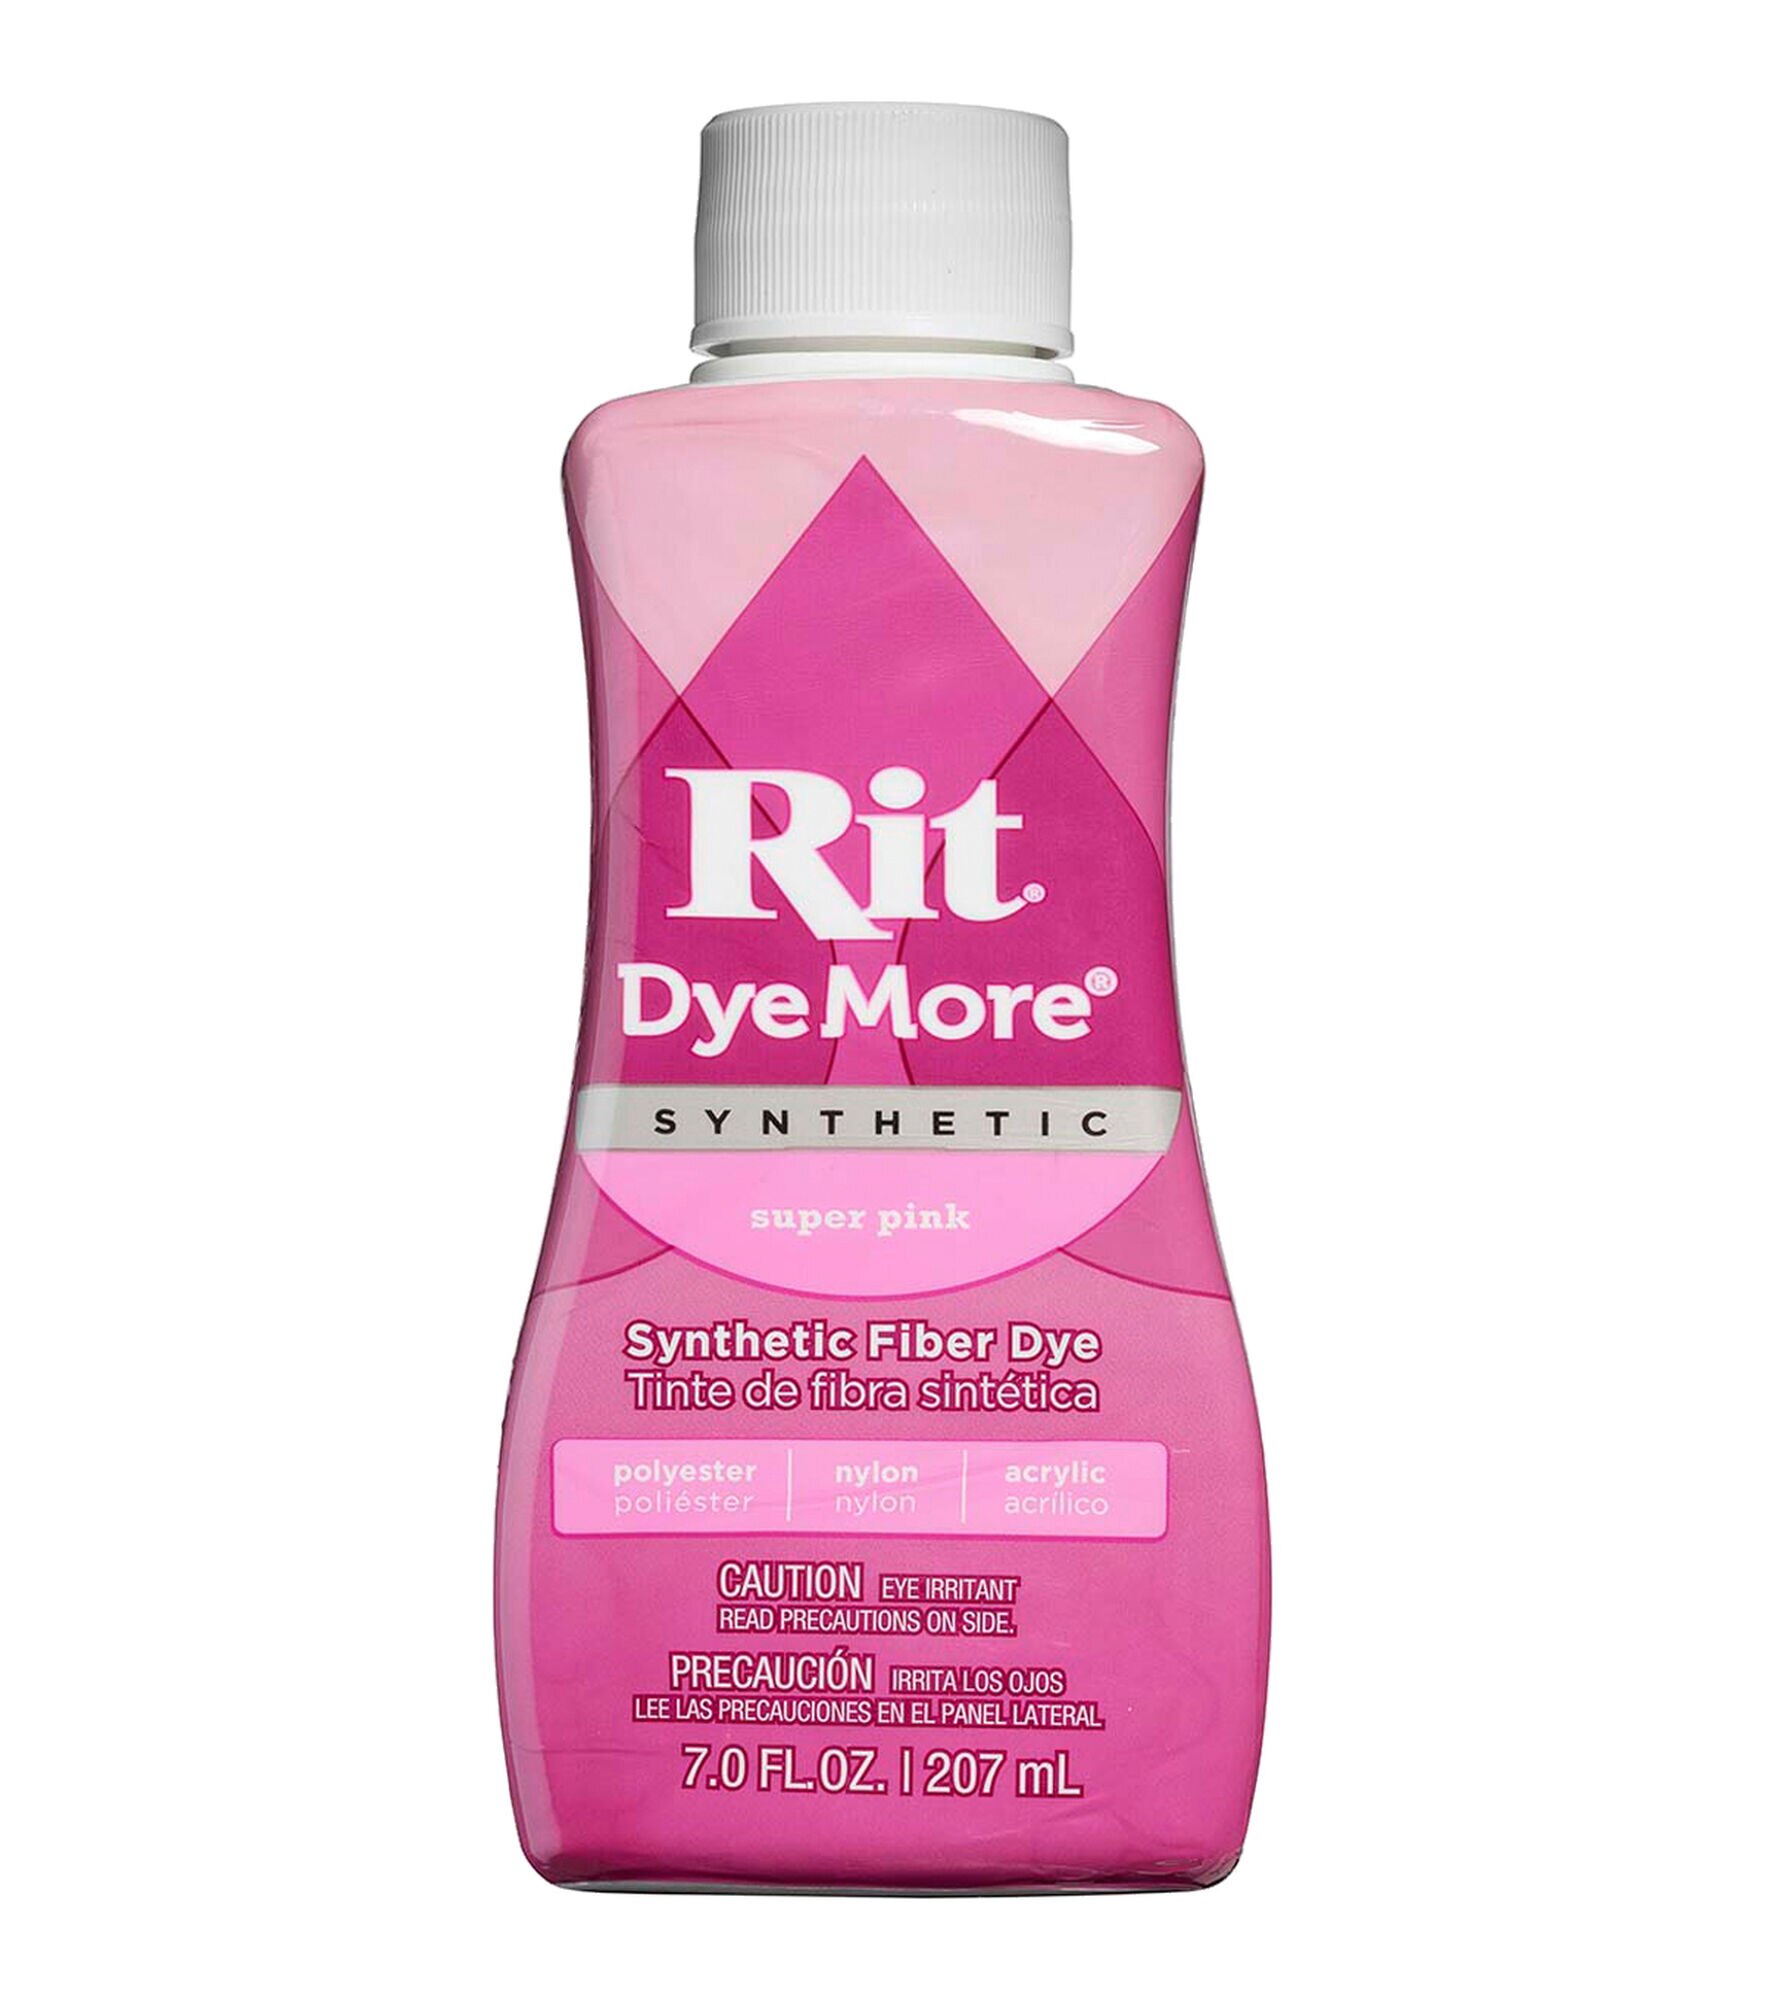 Rit DyeMore Synthetic Fiber Dye - Graphite, 7 oz